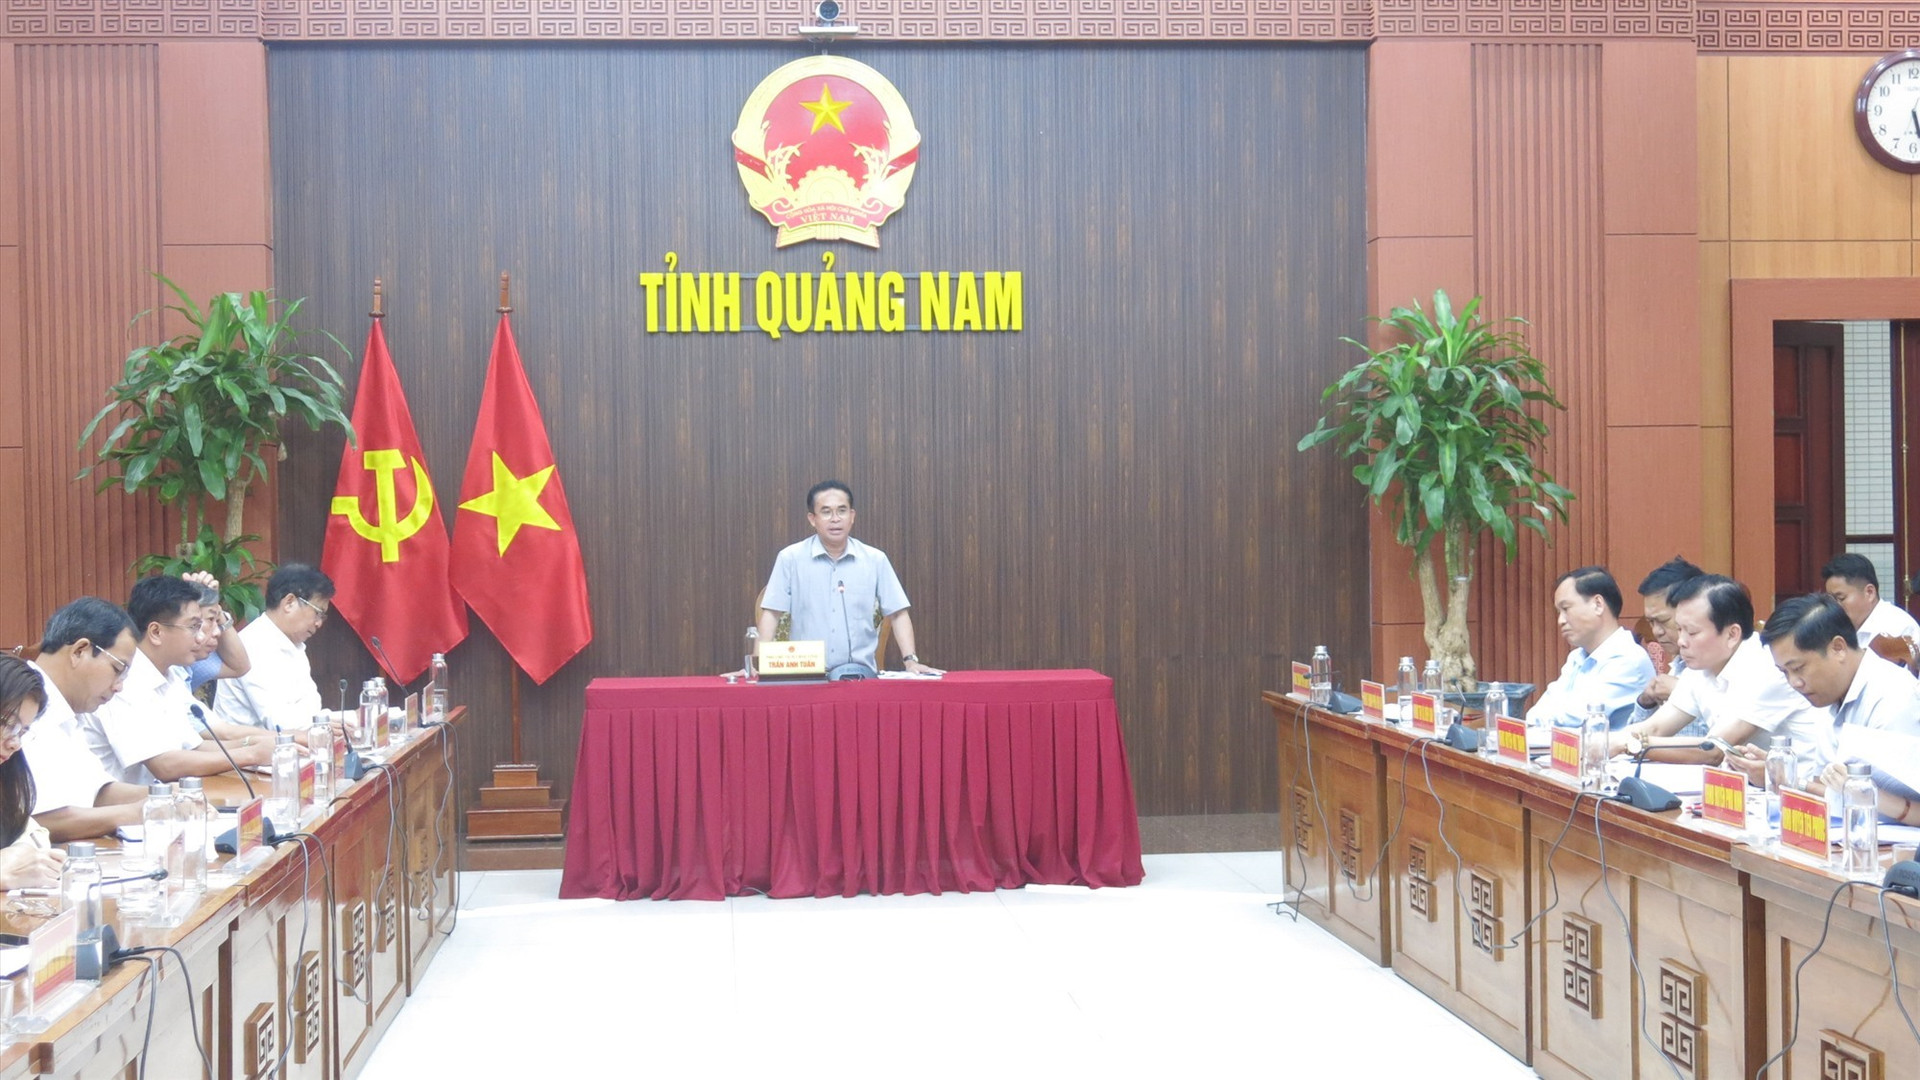 Phó Chủ tịch UBND tỉnh Trần Anh Tuấn, Trưởng ban Chỉ đạo các Chương trình mục tiêu quốc gia tỉnh Quảng Nam chủ trì phiên họp.